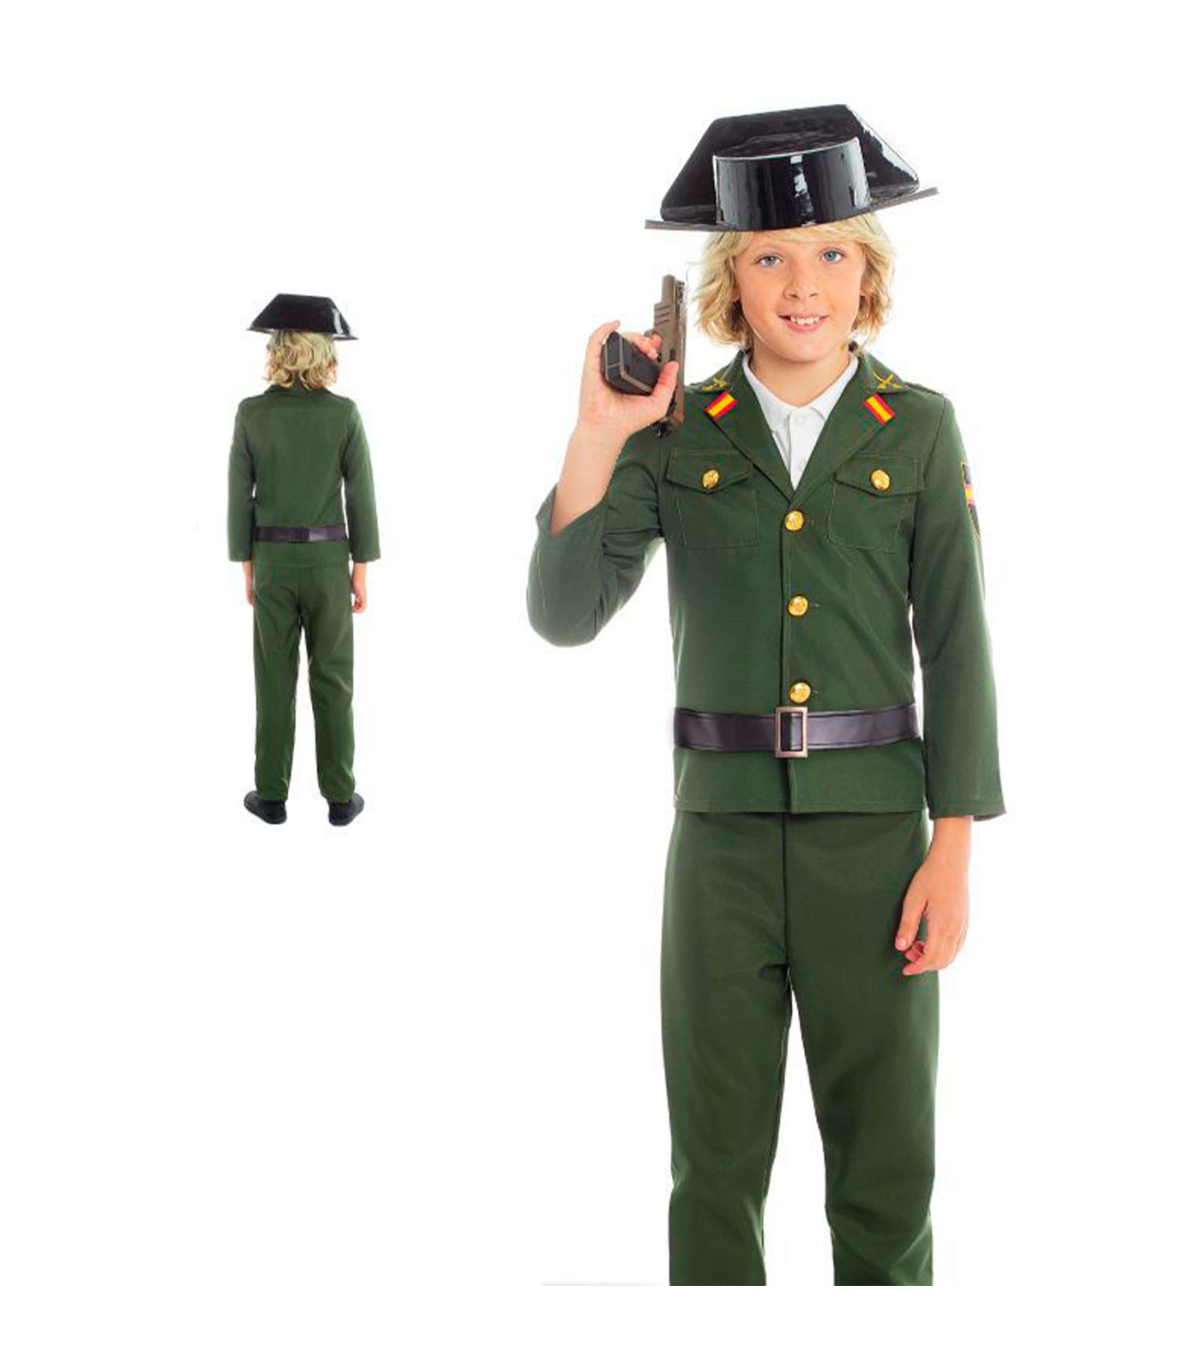 Disfraz de Policía para niños de 10 a 12 años